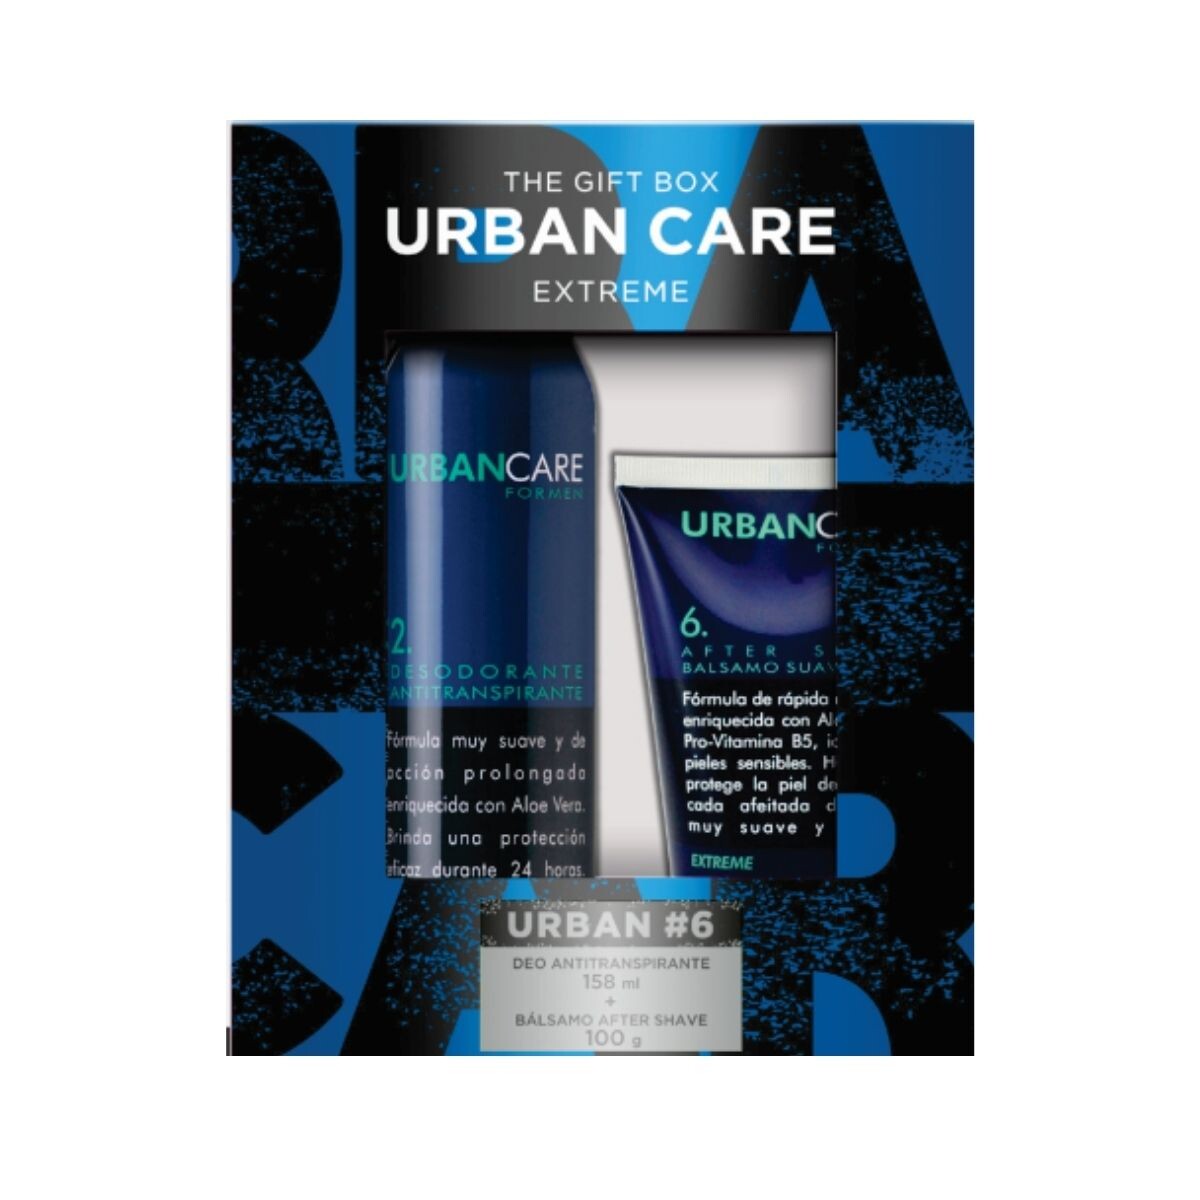 Desodorante Antitranspirante Urban Care for Men - Extreme 158 ML + After Shave 100 GR 